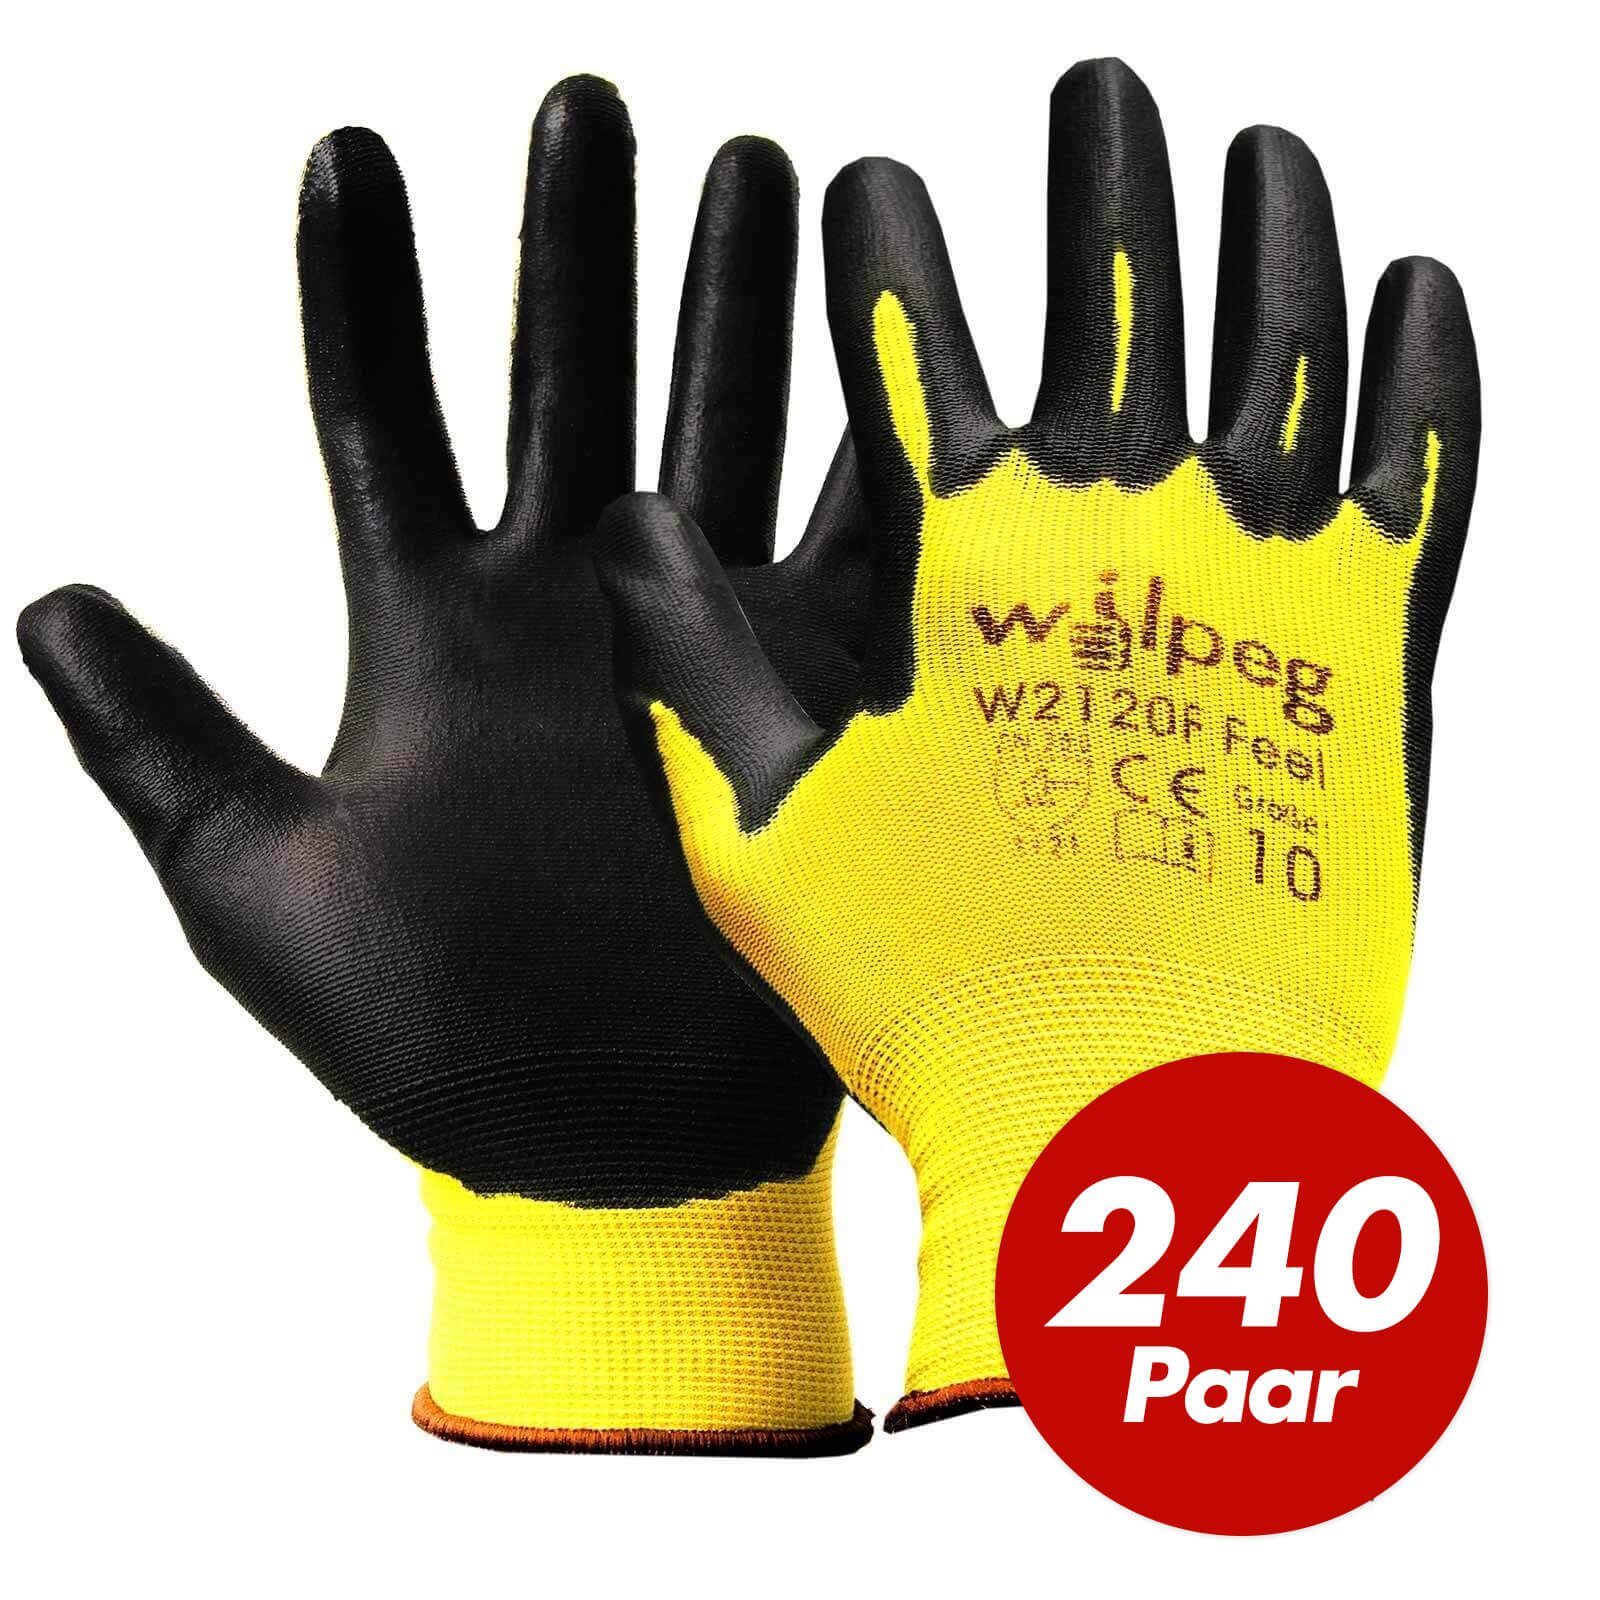 wilpeg® Nitril-Handschuhe WILPEG W2120F Nylon-Strickhandschuhe PU Feel für Garten - VPE 240 Paar (Spar-Set) schwarz/gelb